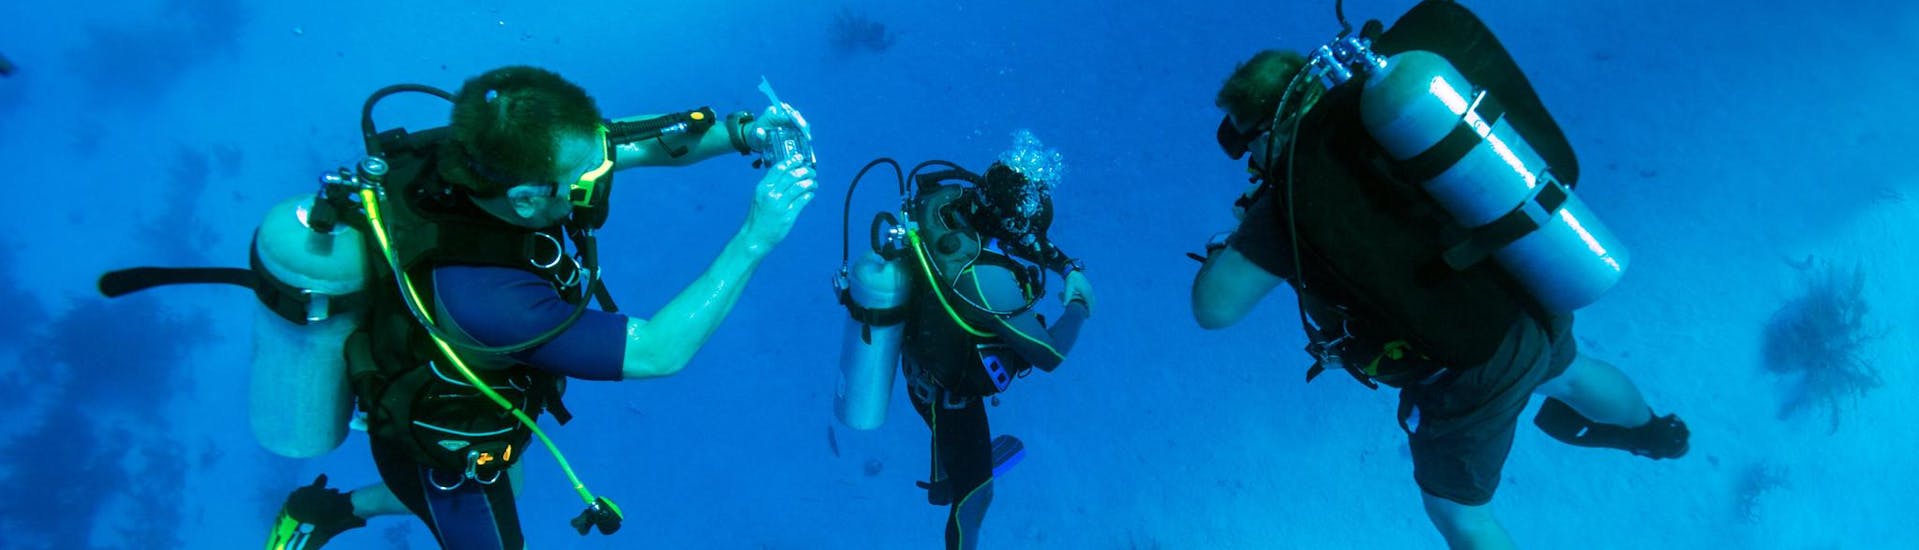 Deux plongeurs encadrés par un guide expérimenté lors d'une activité.